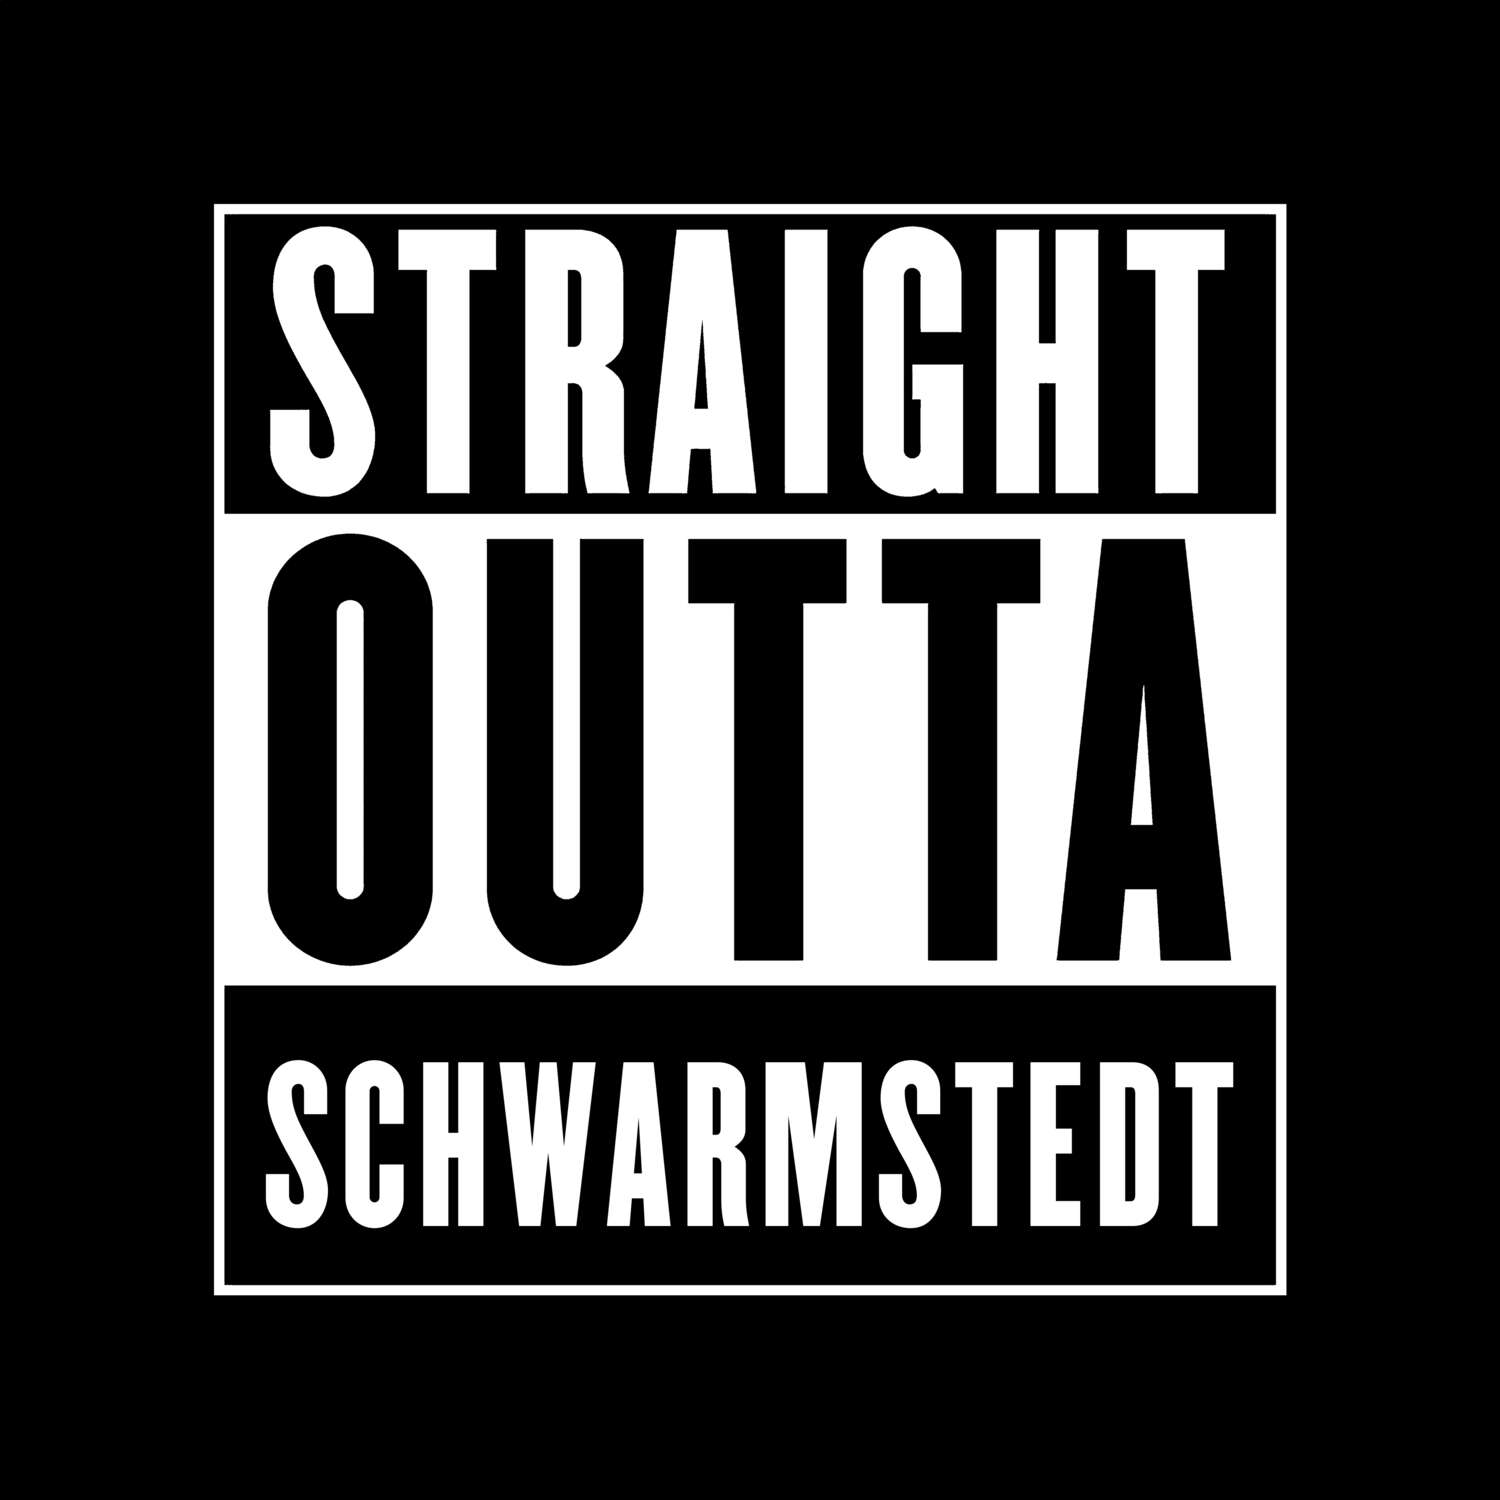 Schwarmstedt T-Shirt »Straight Outta«